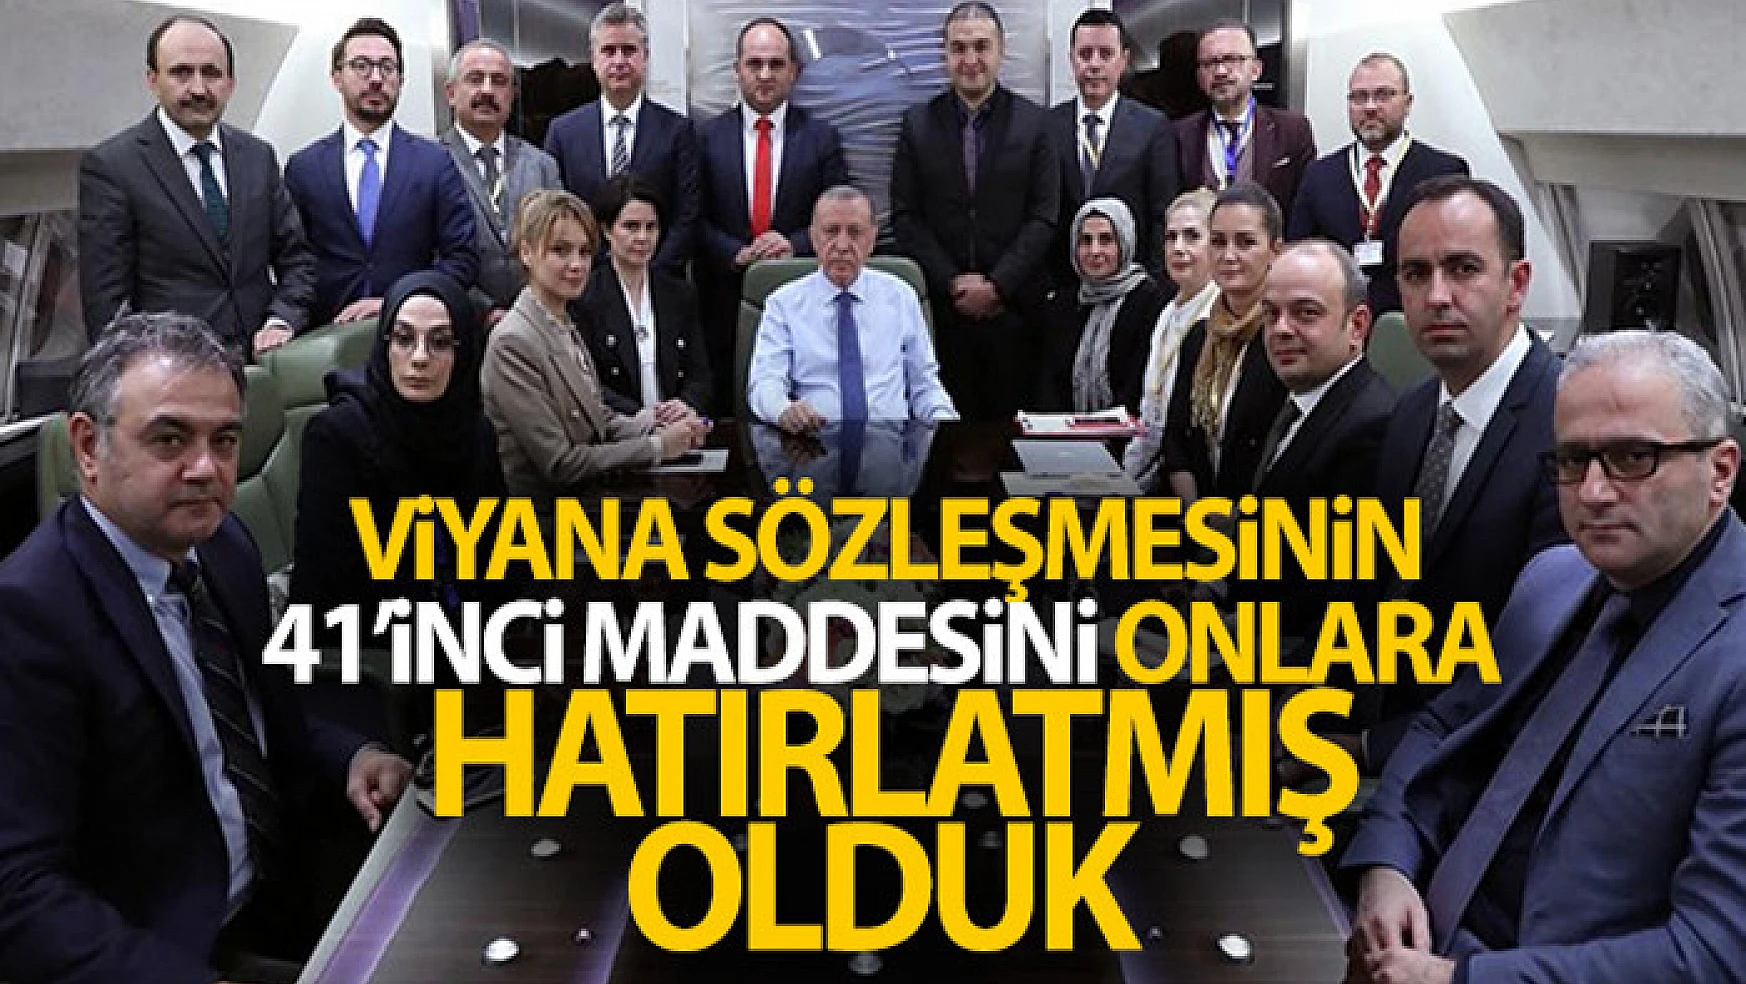 Cumhurbaşkanı Erdoğan: Viyana Sözleşmesinin 41'inci maddesini onlara hatırlatmış olduk